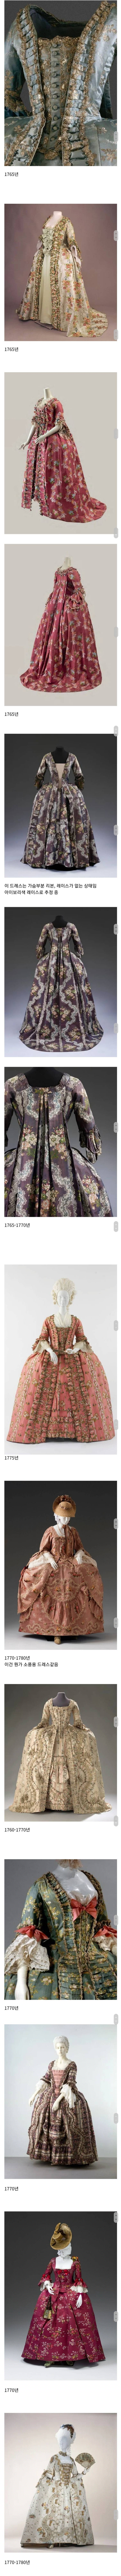 250년 전 유럽 귀족들이 실제로 입었던 드레스들.jpg | 인스티즈